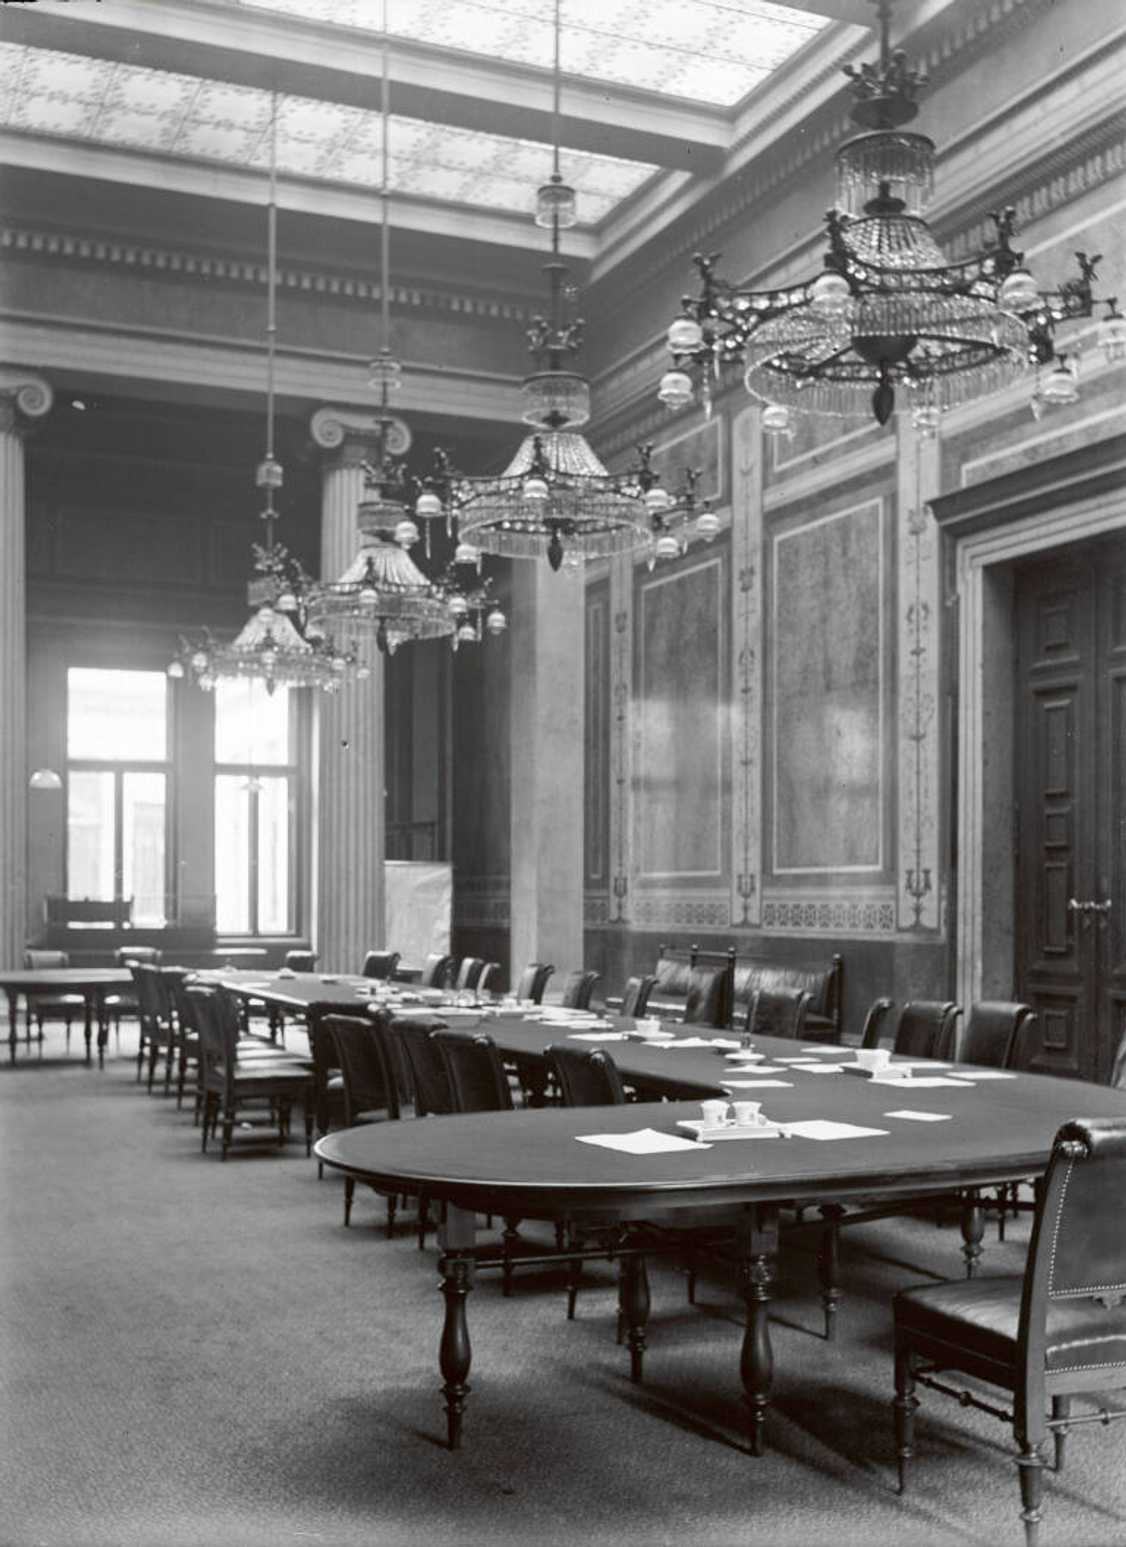 Nová budova říšské rady—jedna ze zasedacích místností poslanecké sněmovny (cca 1917)
